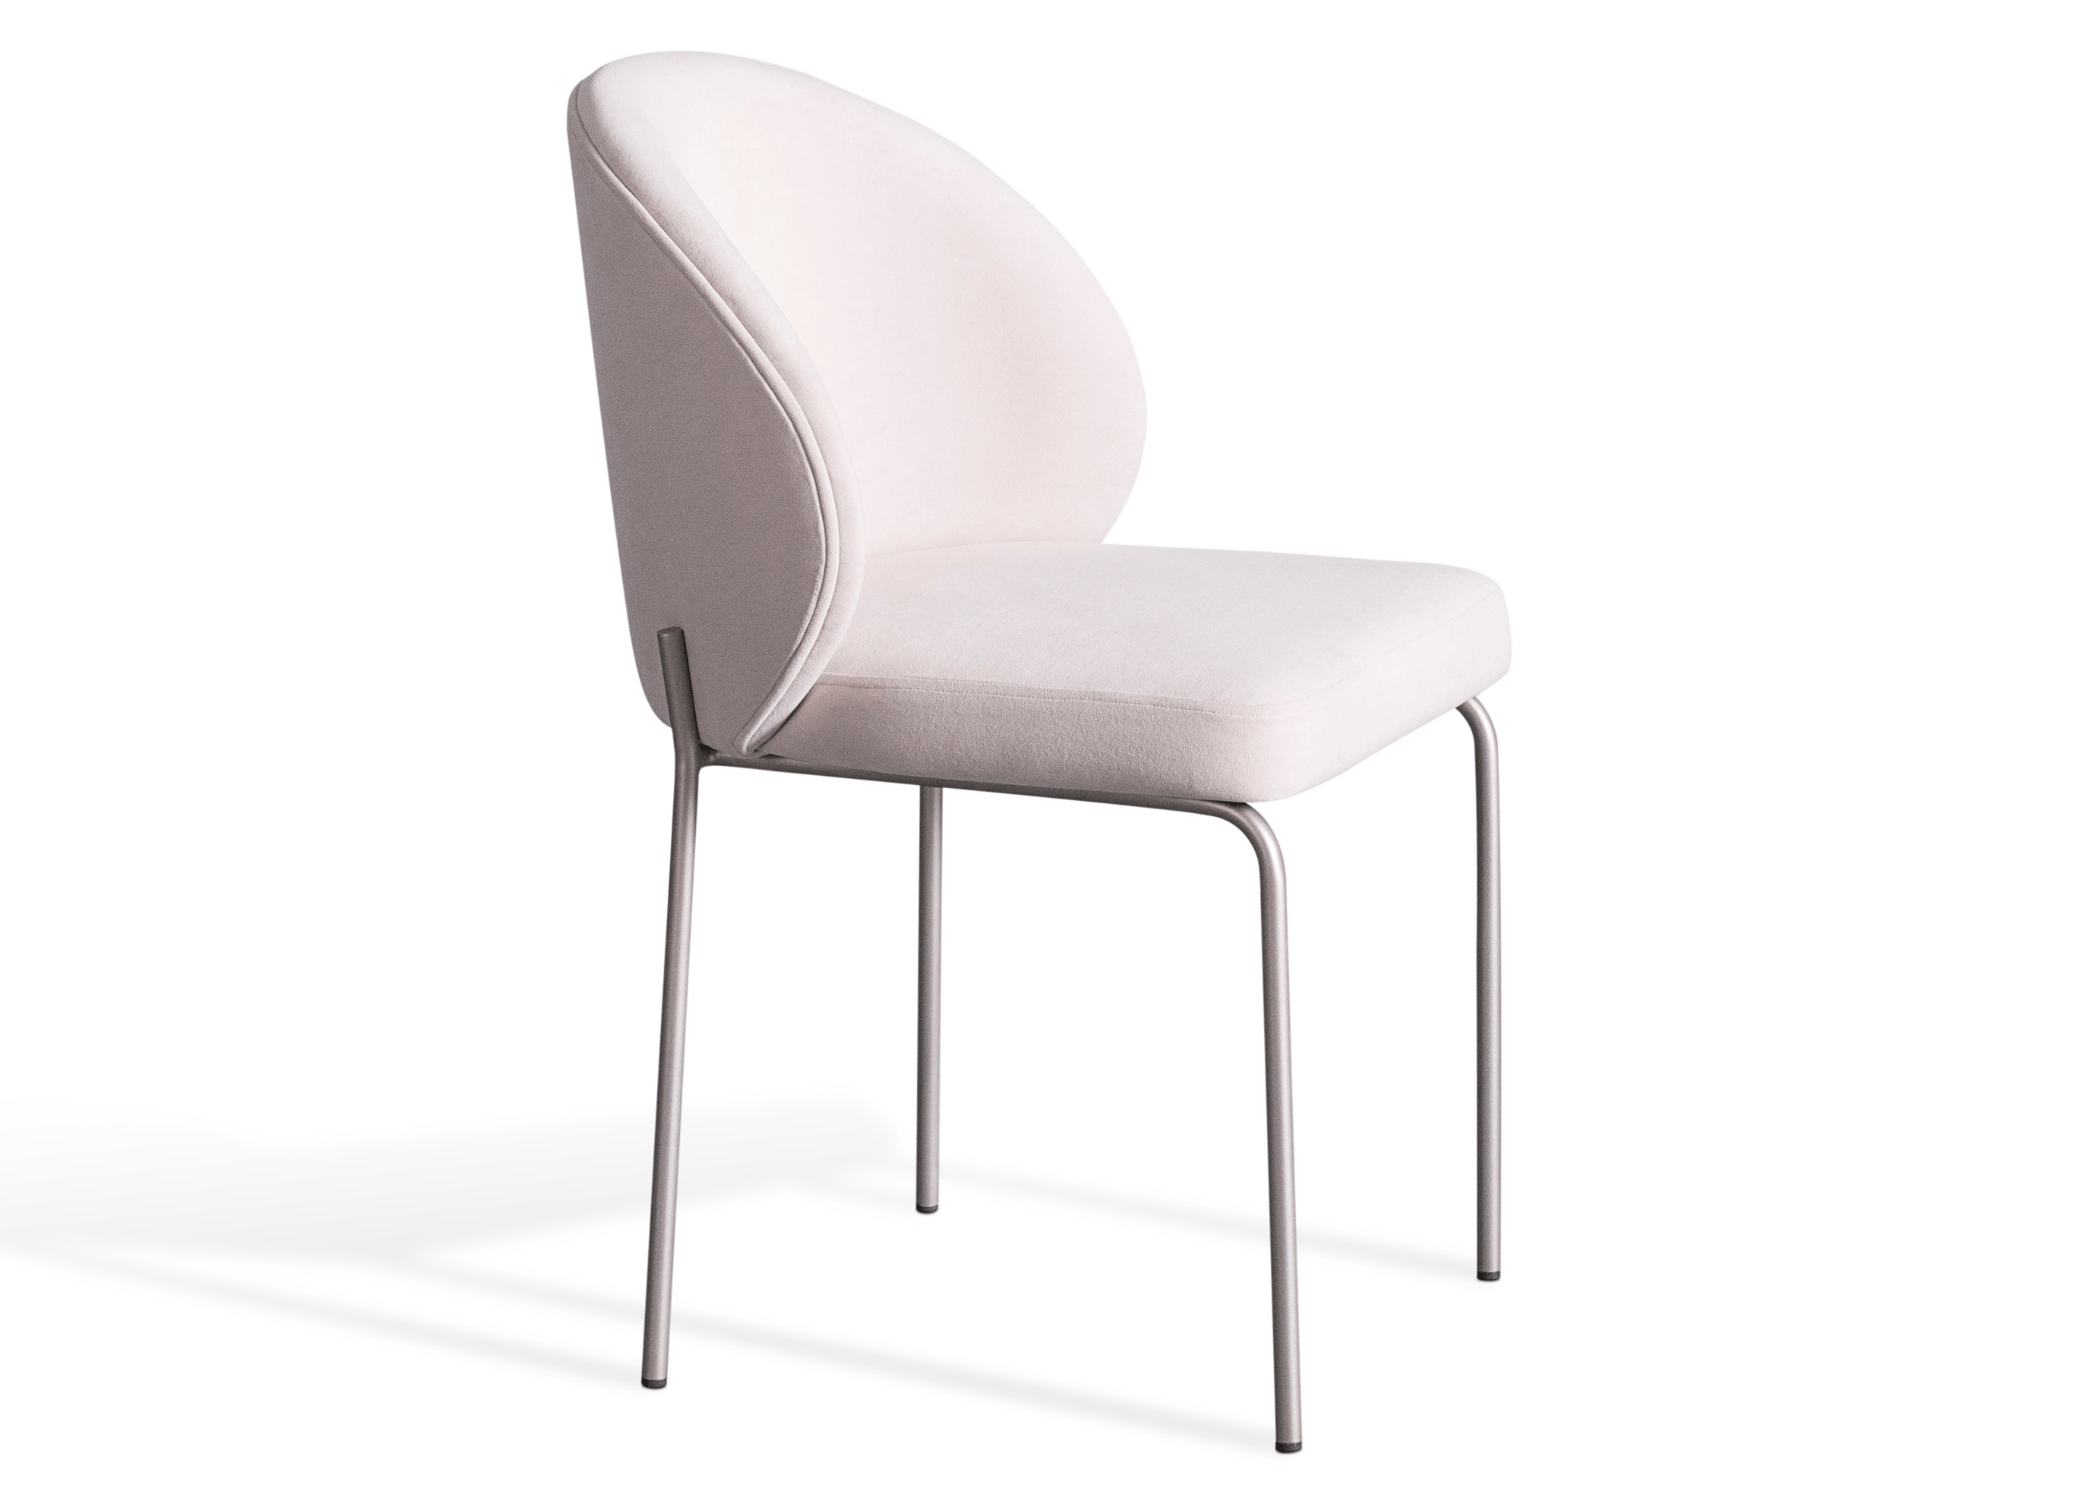 Cadeira Zayn em diferentes ângulos para apreciar seu design exclusivo.